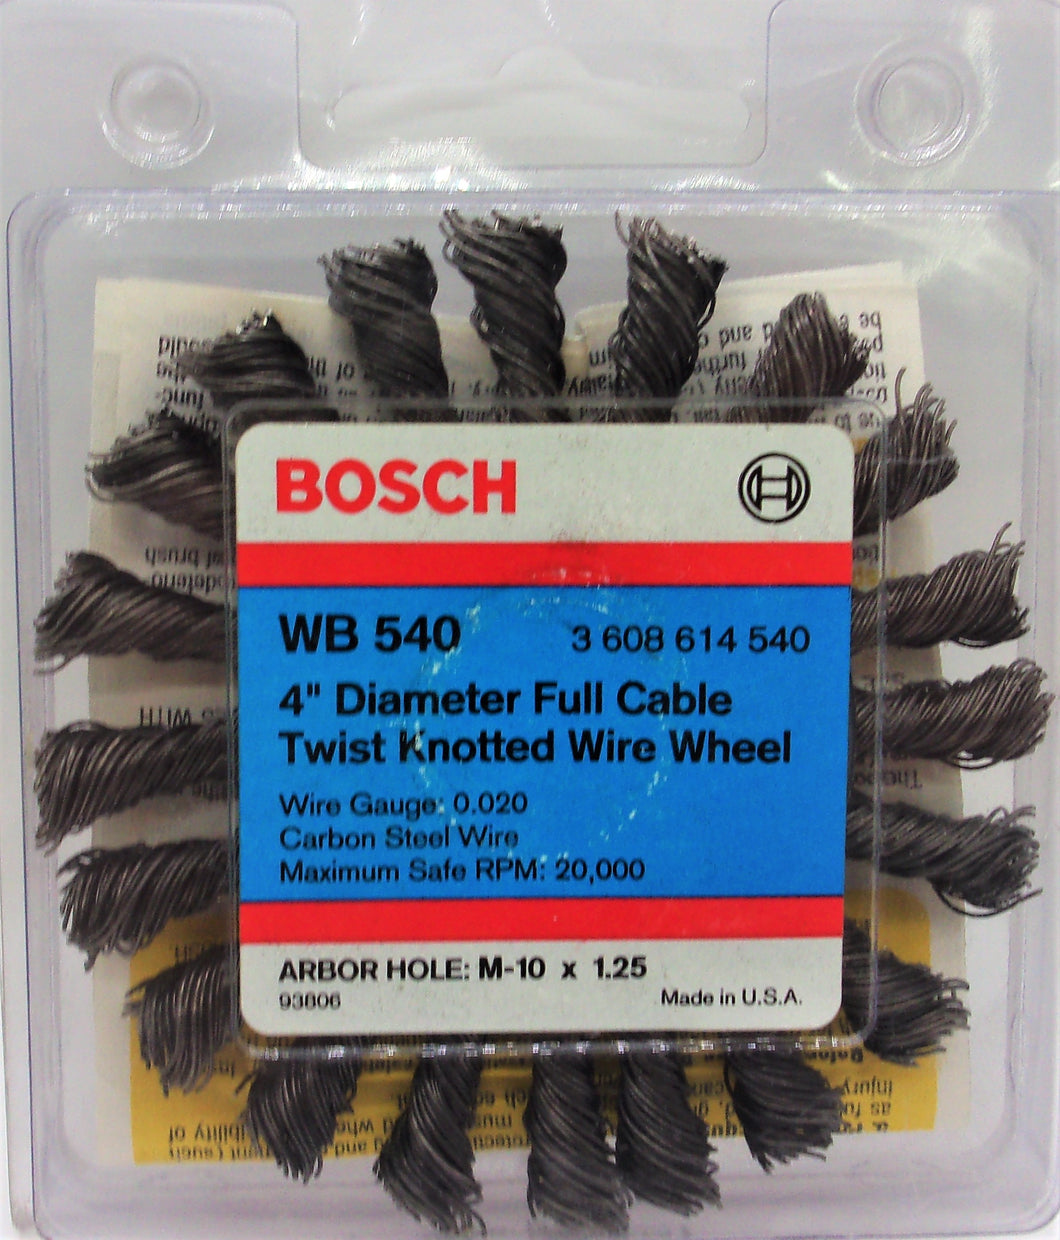 Bosch WB 540 Rueda de amoladora de alambre anudado torcido de cable completo de 4